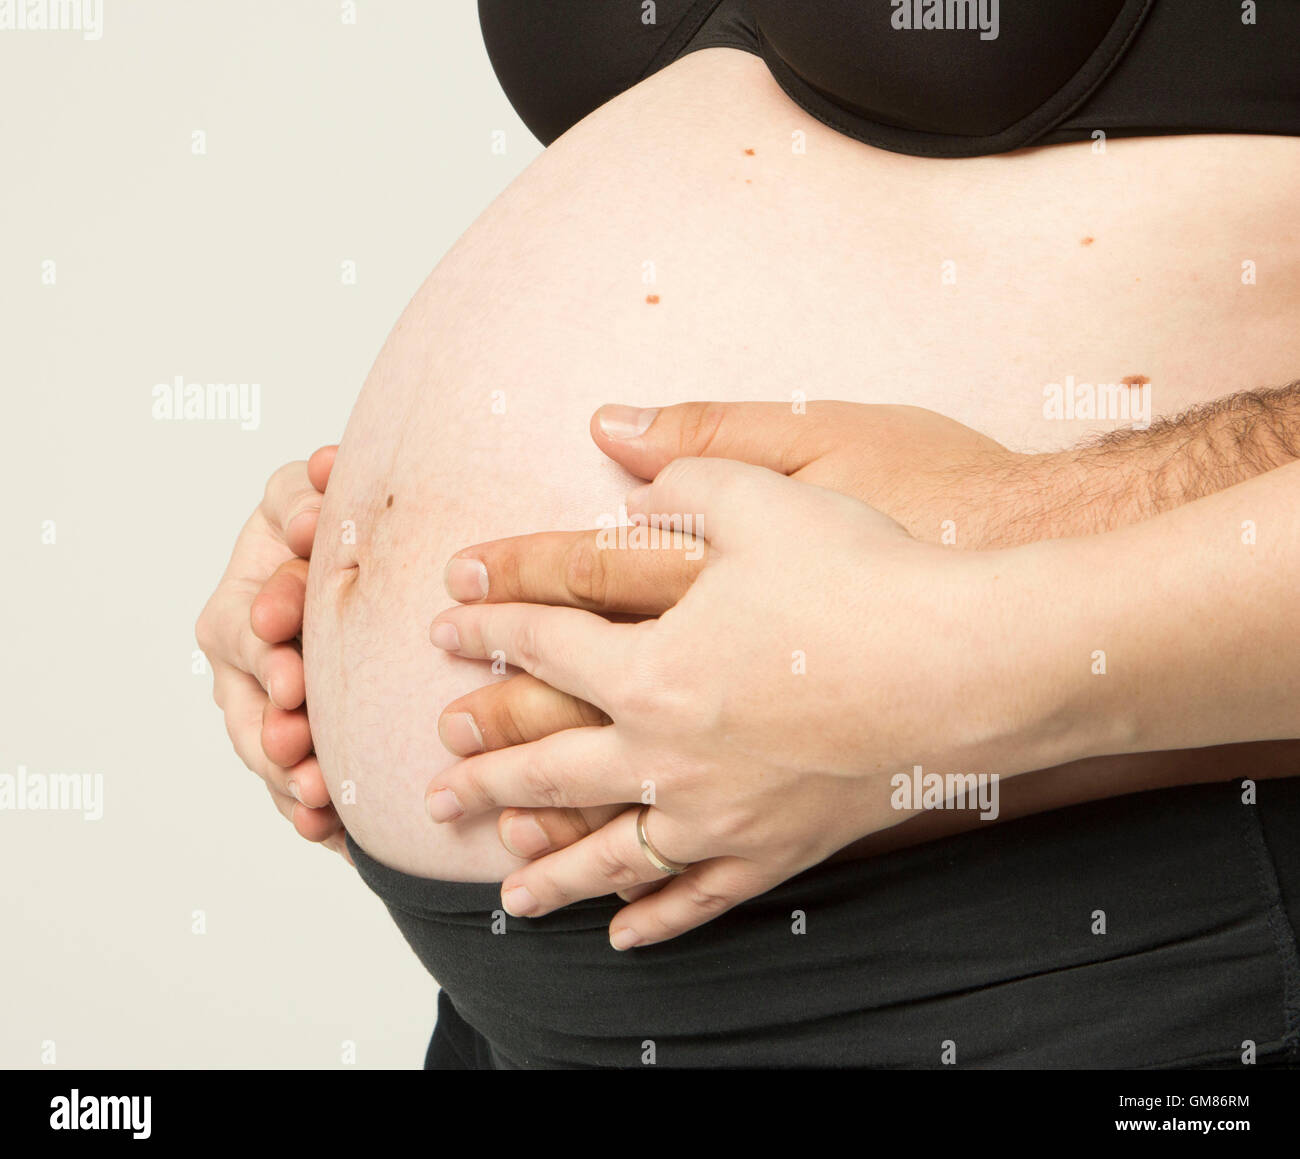 Schwangere Frau hielt ihre Hände auf schönen Bauch Stockfoto